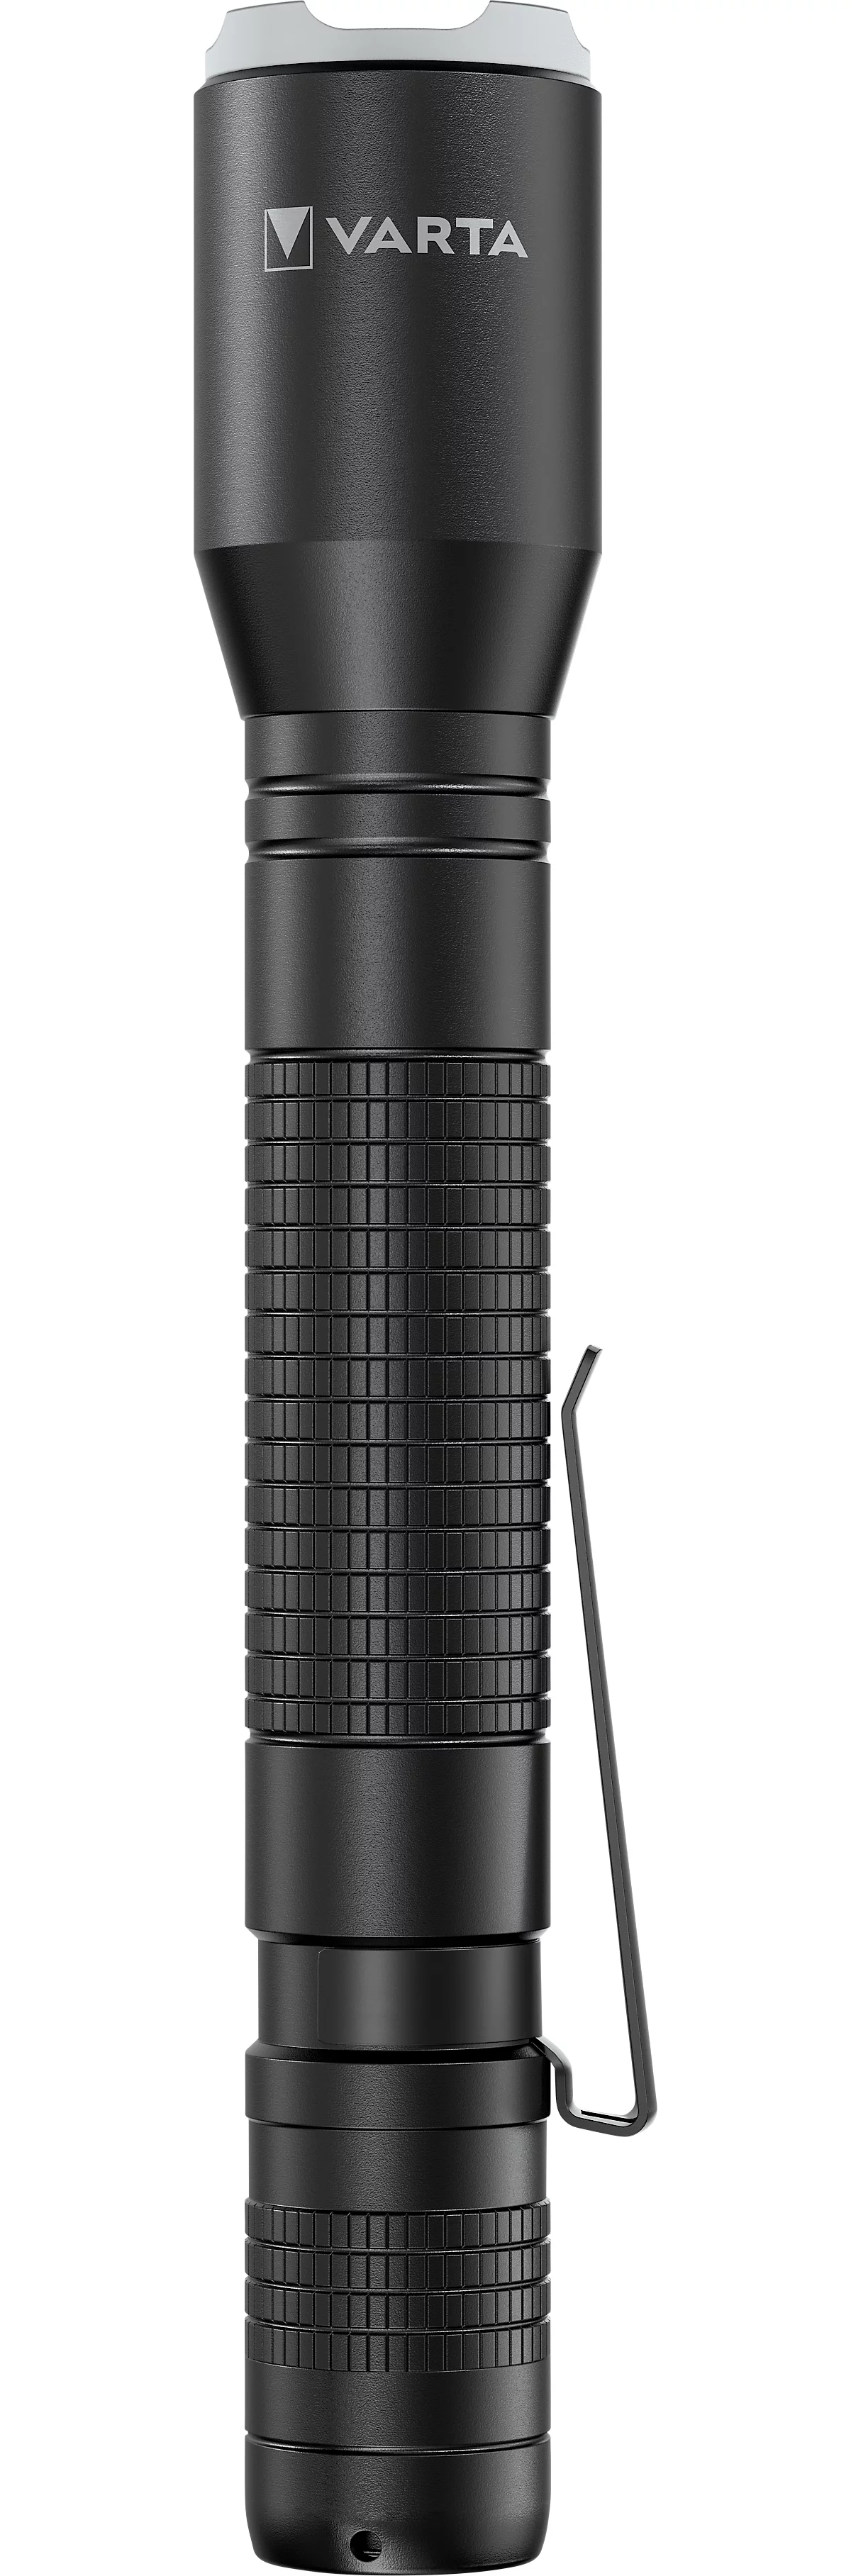 LED-Taschenlampe Varta Aluminium Light F20 Pro, 250 lm, 70 m Reichweite, bis 35 h, inkl. 2 Batterien, ⌀ 42 x H 167 mm, eloxiertes Aluminium, schwarz